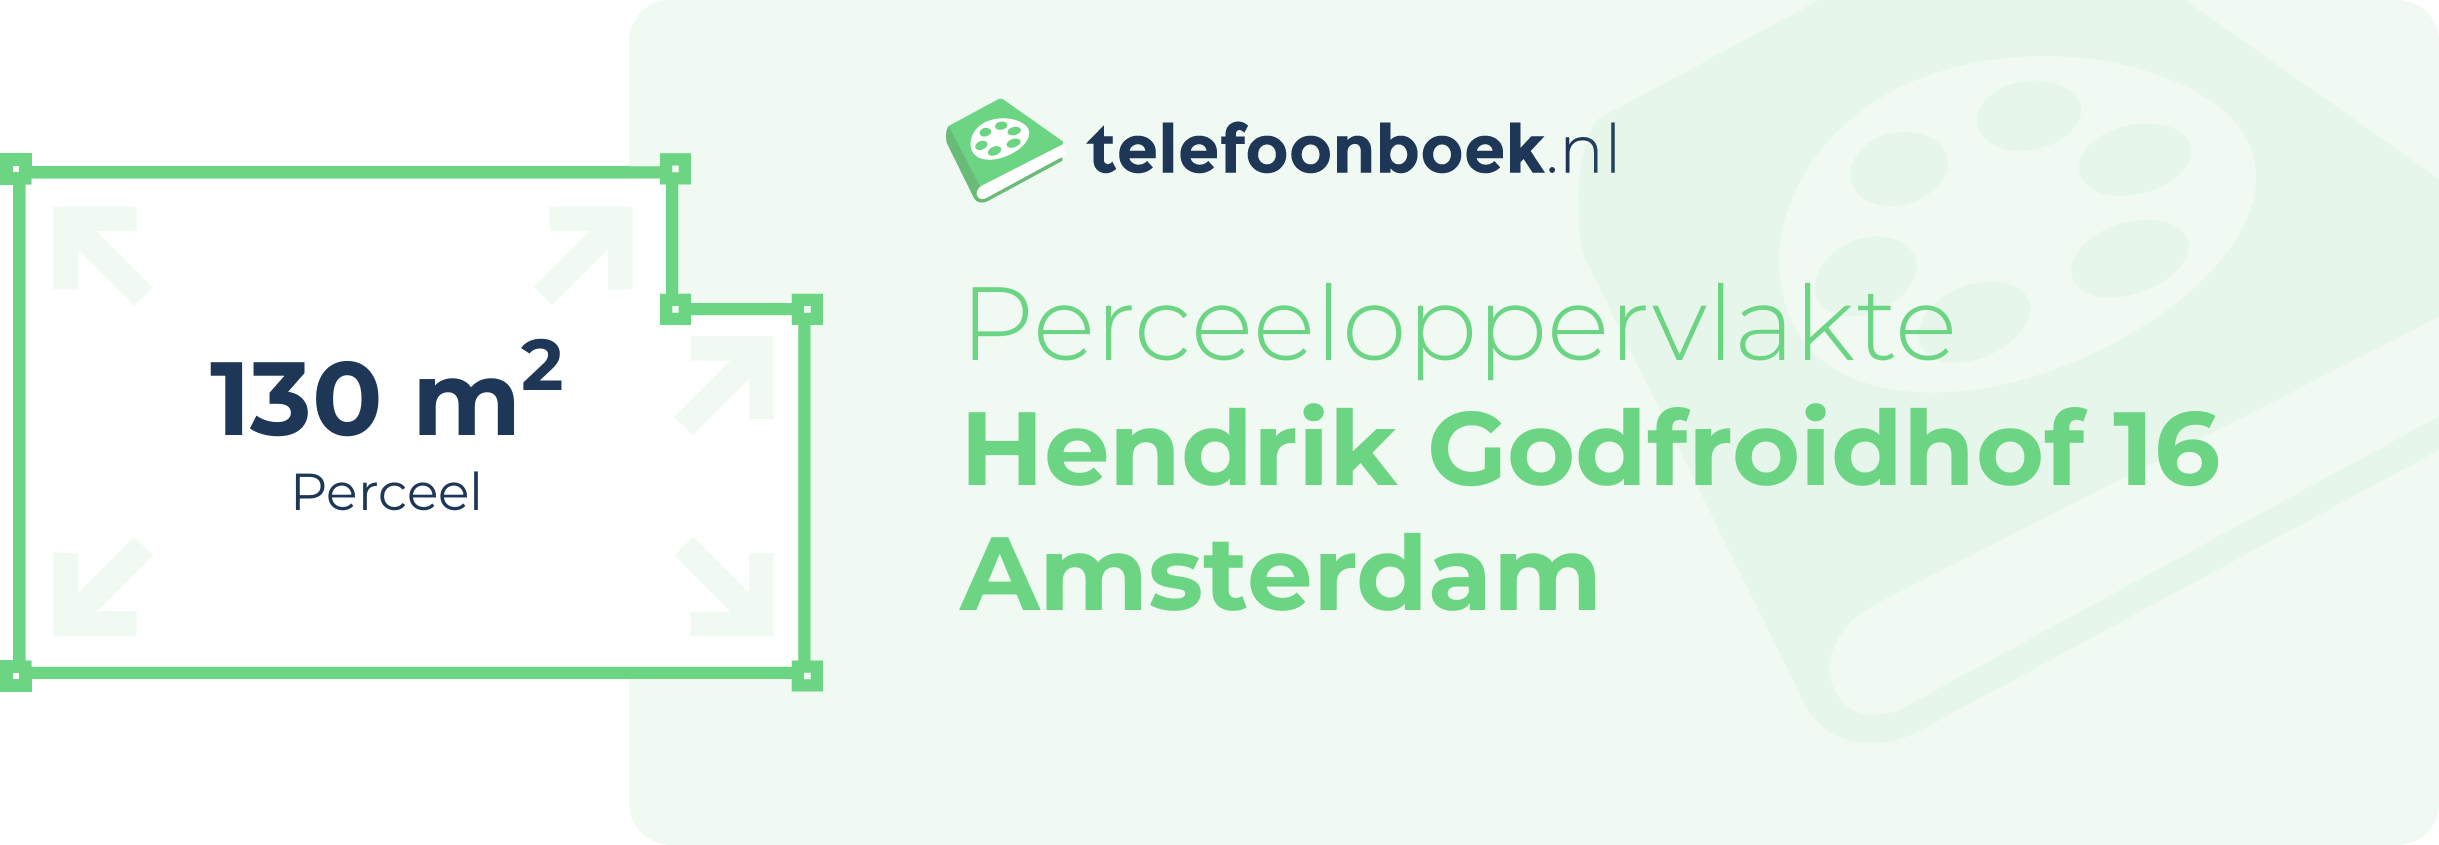 Perceeloppervlakte Hendrik Godfroidhof 16 Amsterdam